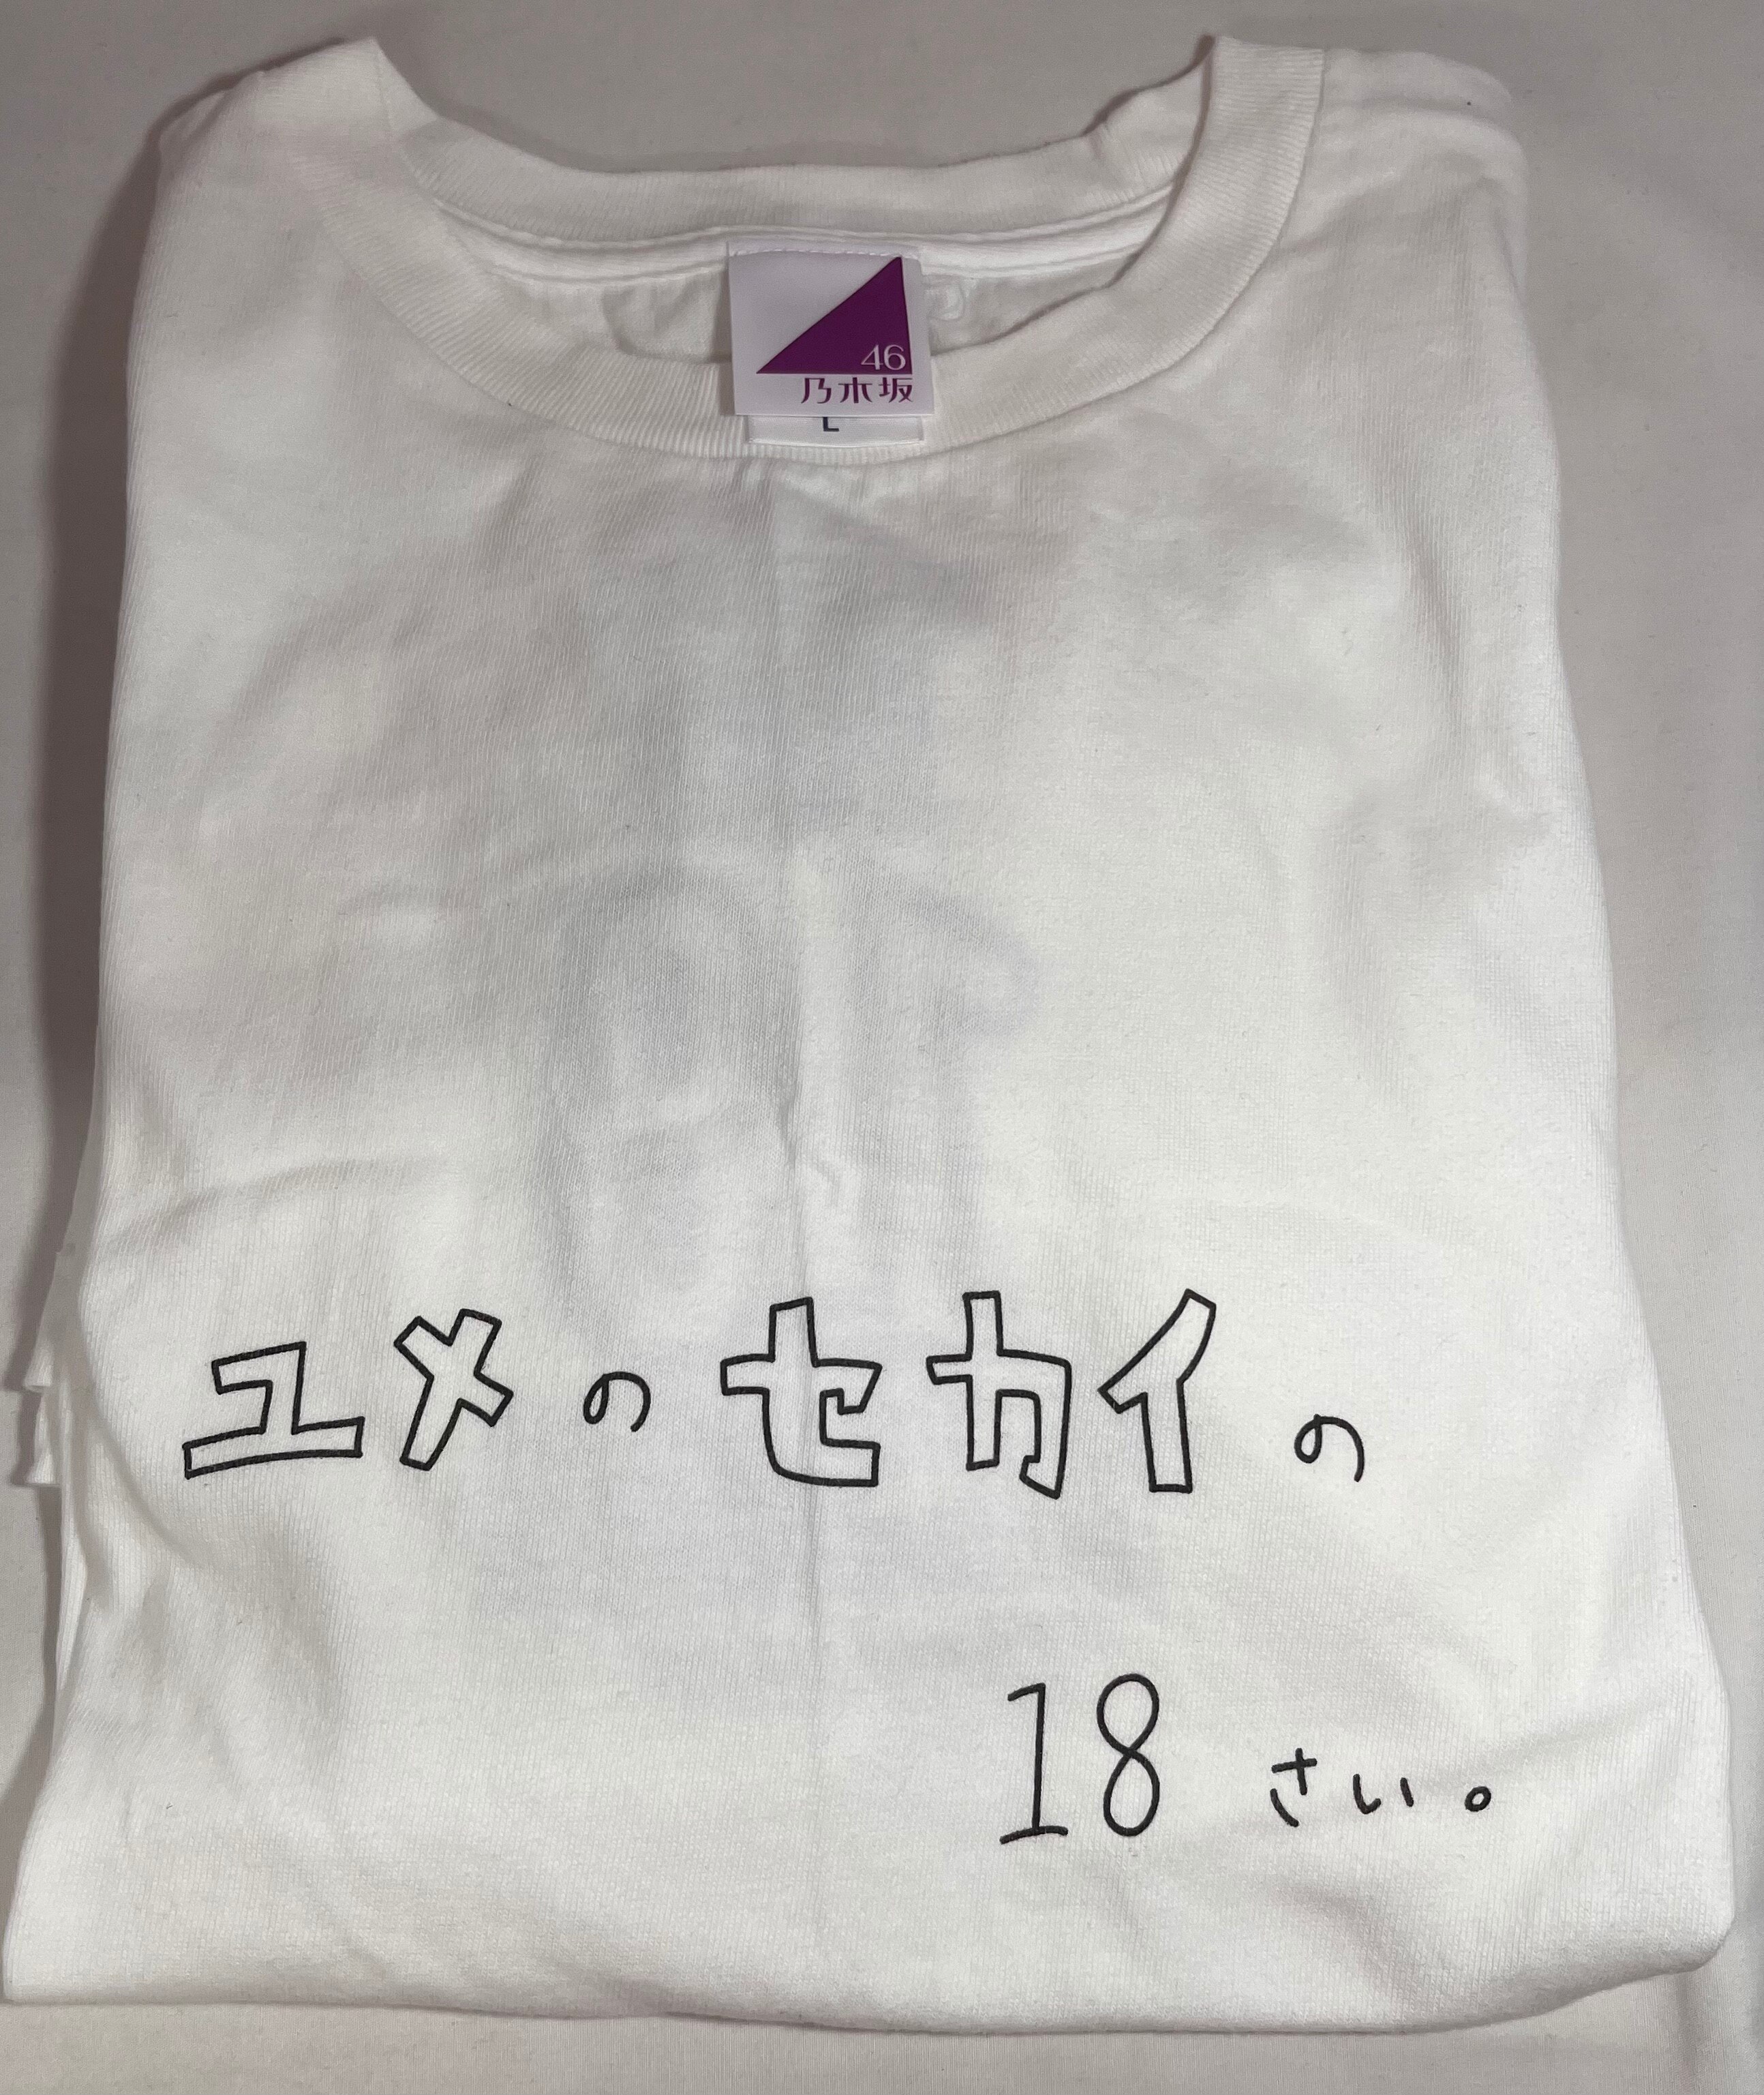 乃木坂46 2020年9月度 中村麗乃 生誕記念Tシャツ(ポストカード無